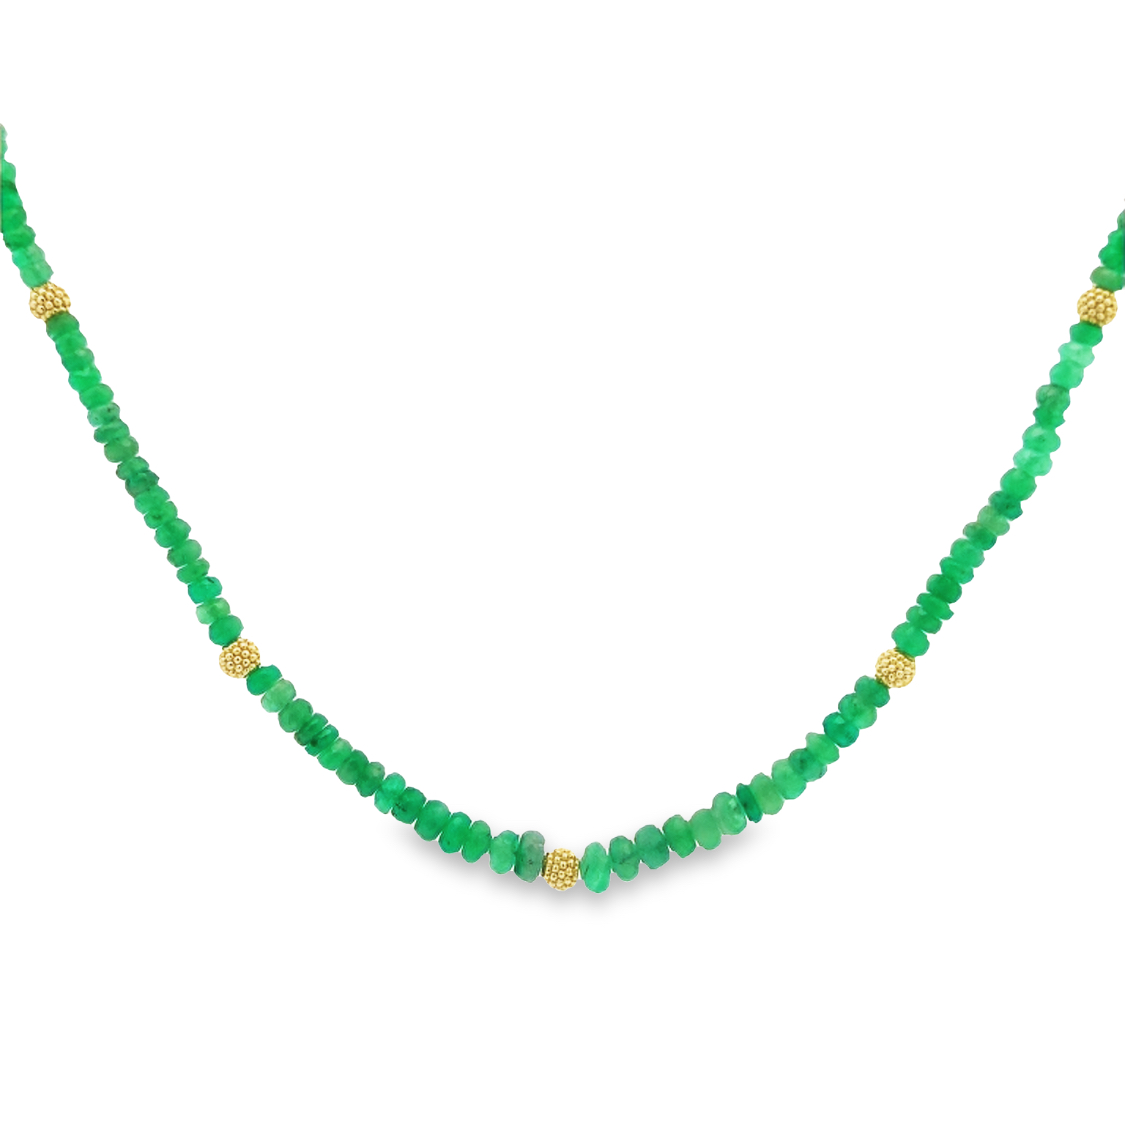 Lauren K 18K Yellow Gold Emerald Beaded Necklace